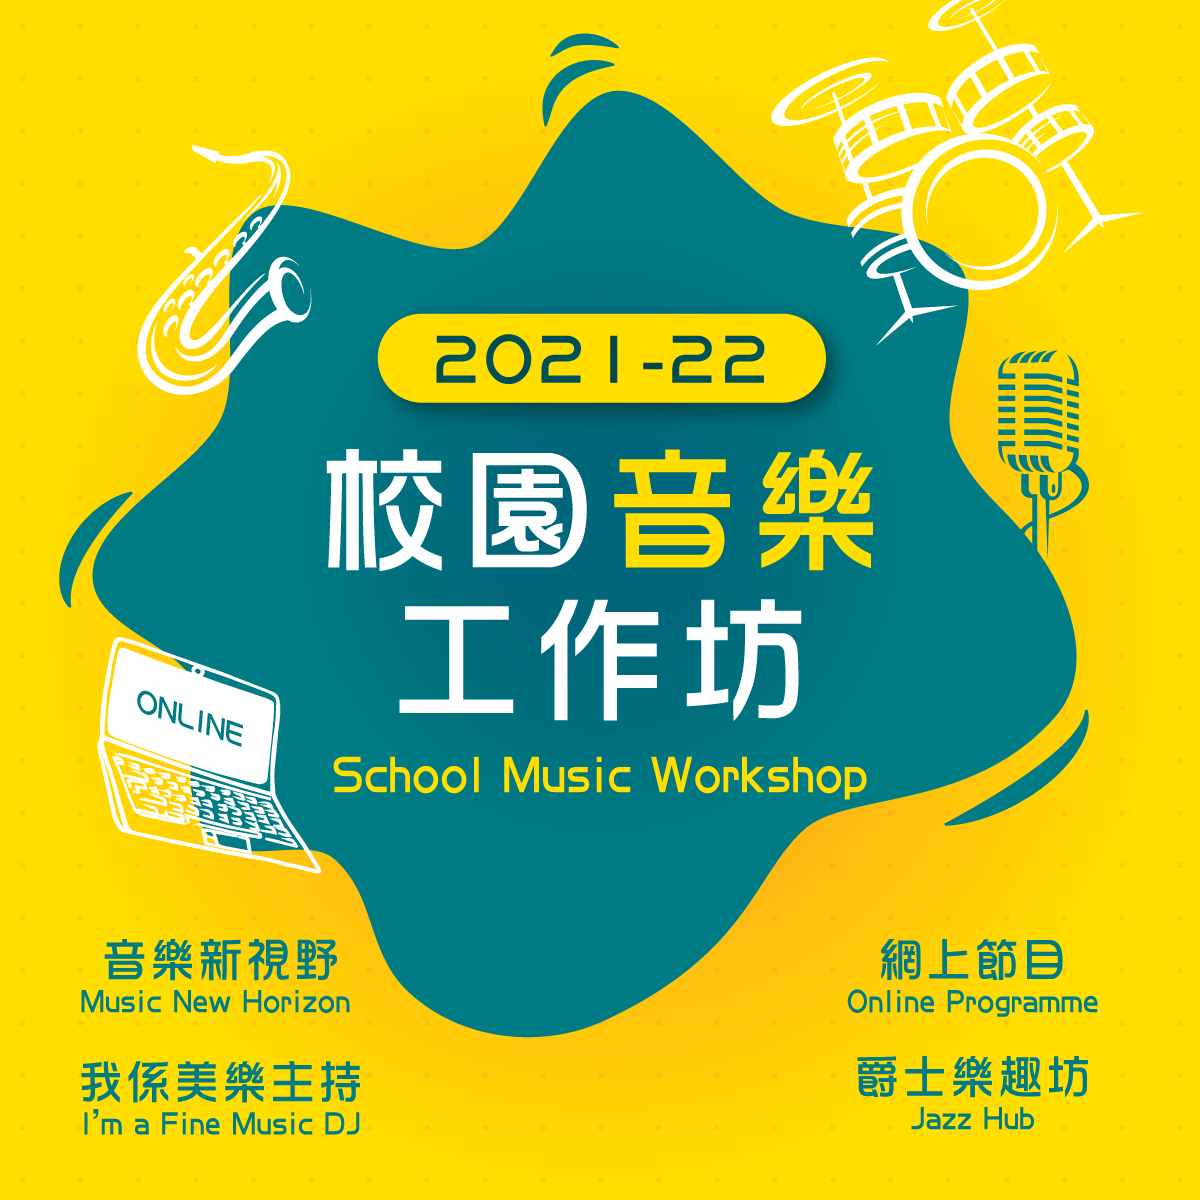 2021-22 School Music Workshop Series